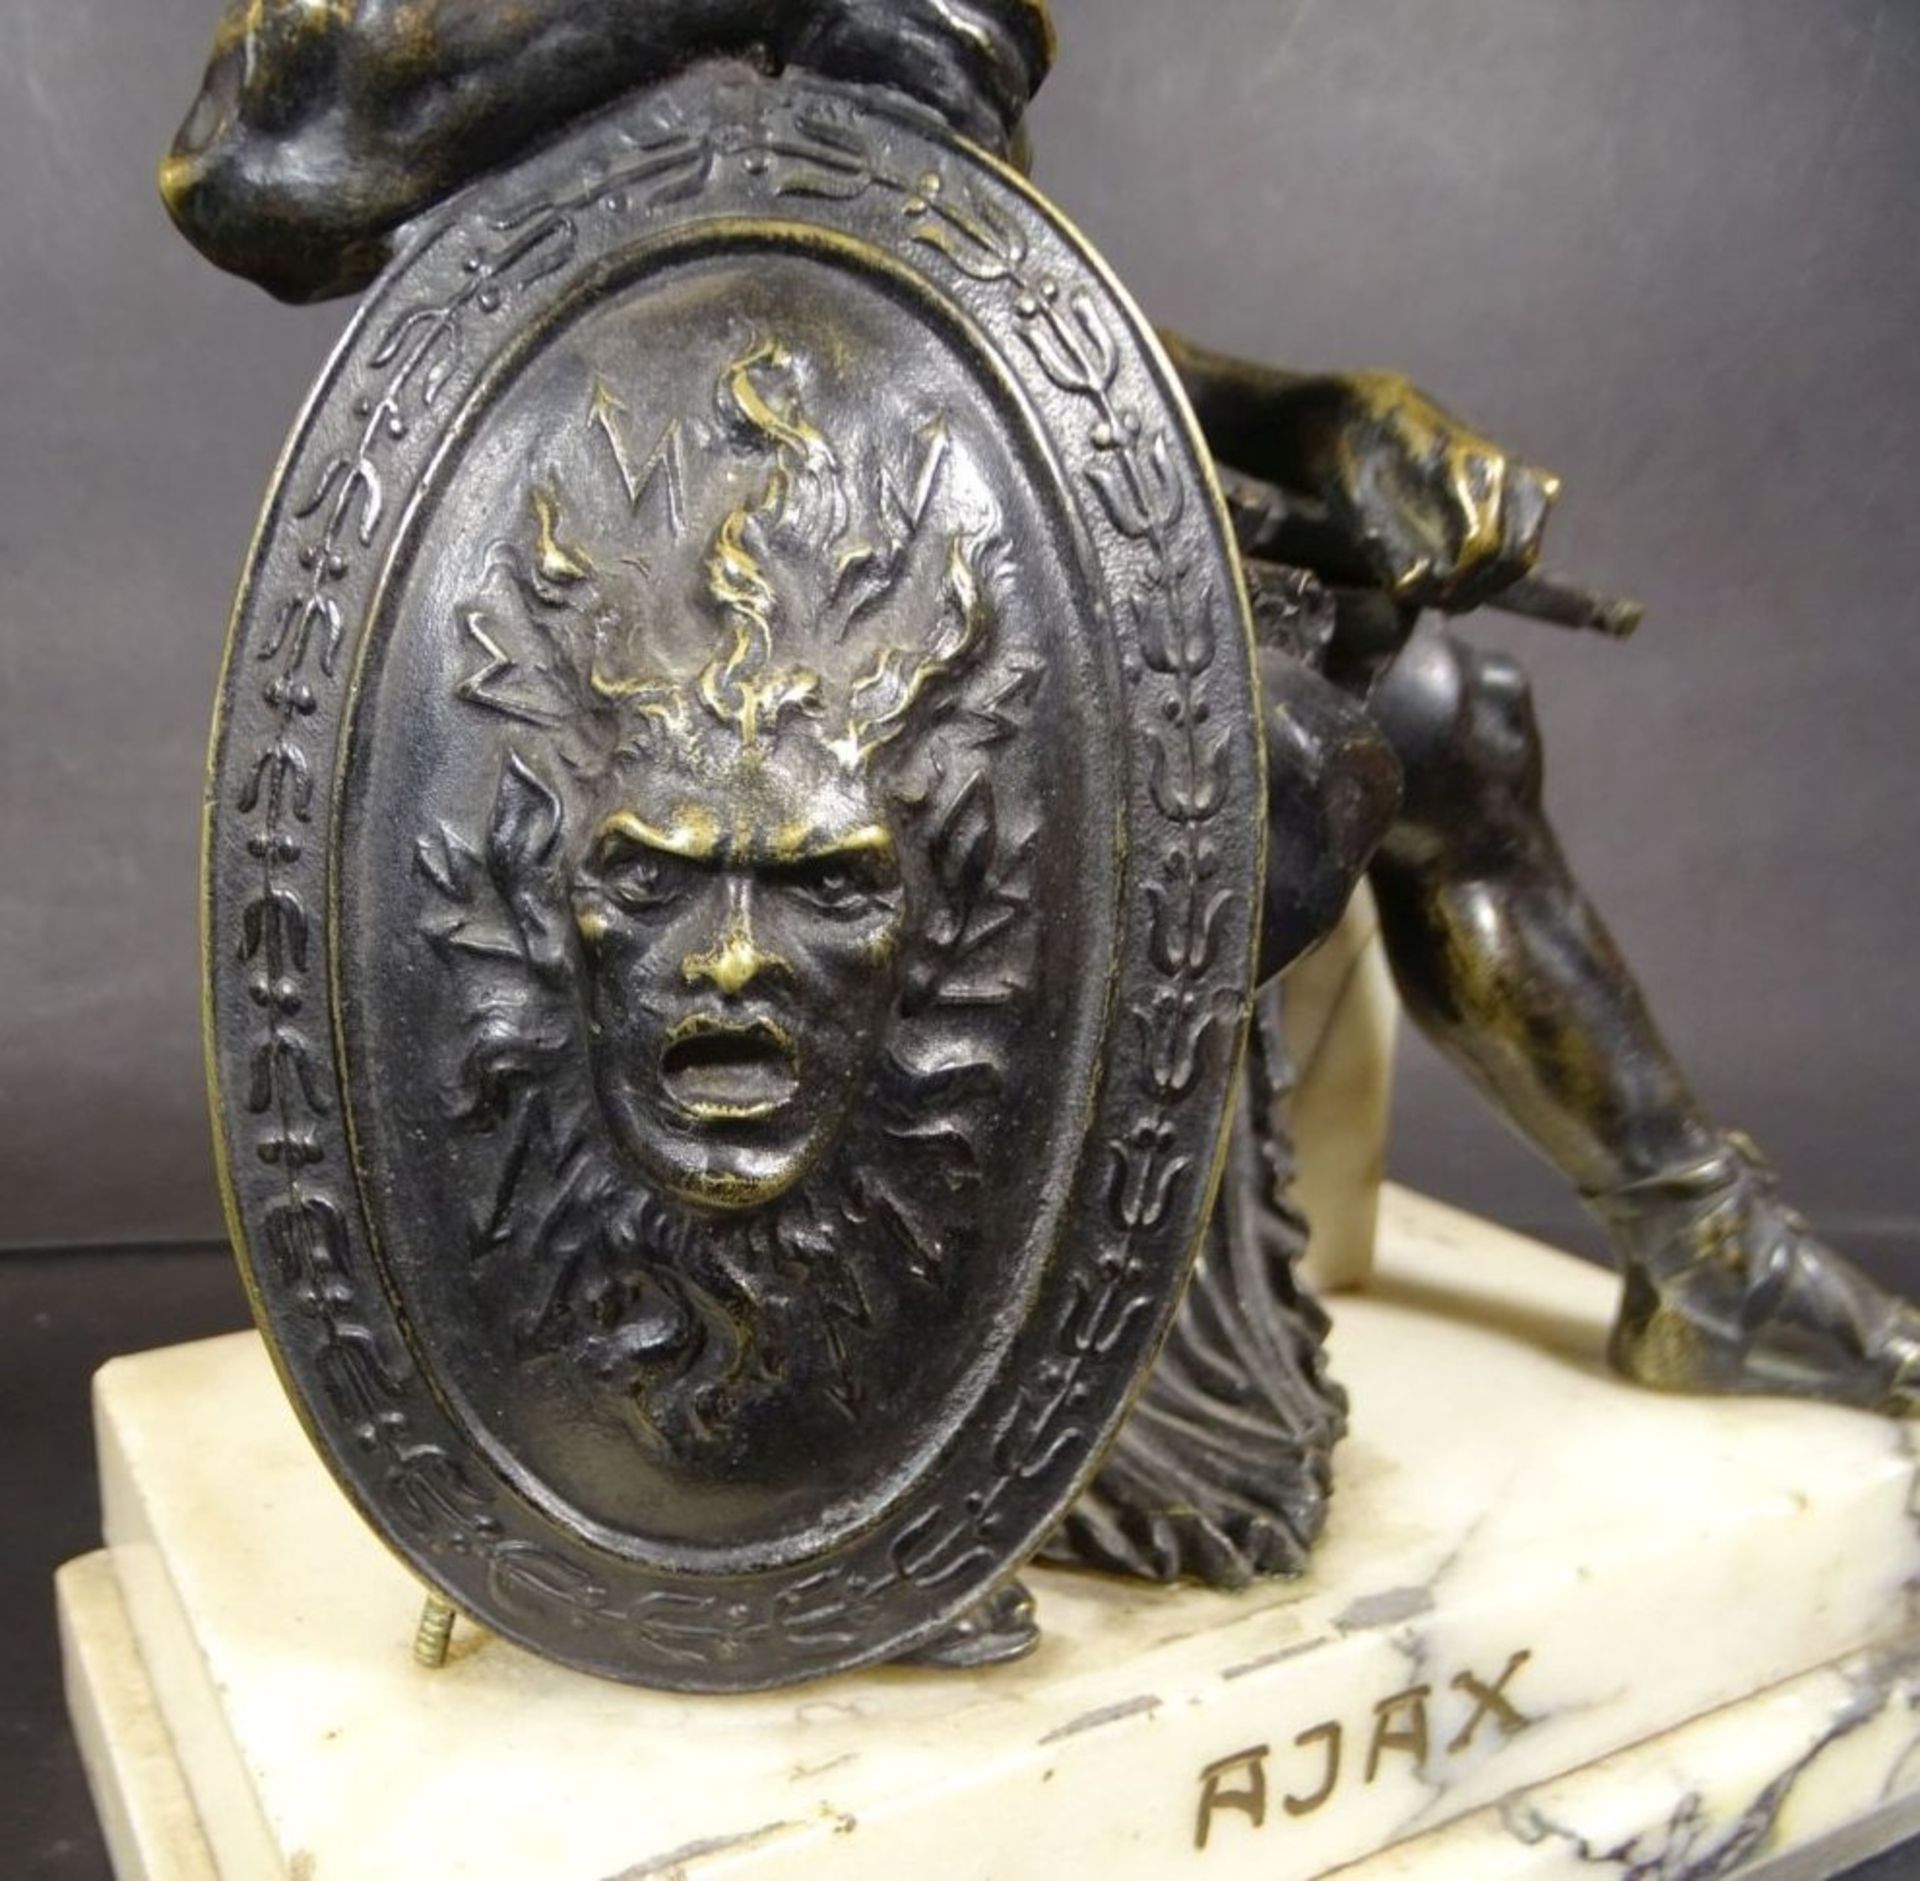 Schuchl signierte Bronze "Ajax" betitelt, auf Marmorsockel, H-29 cm, 11x19 cm, 5,7 kg- - -22.61 % - Bild 6 aus 10